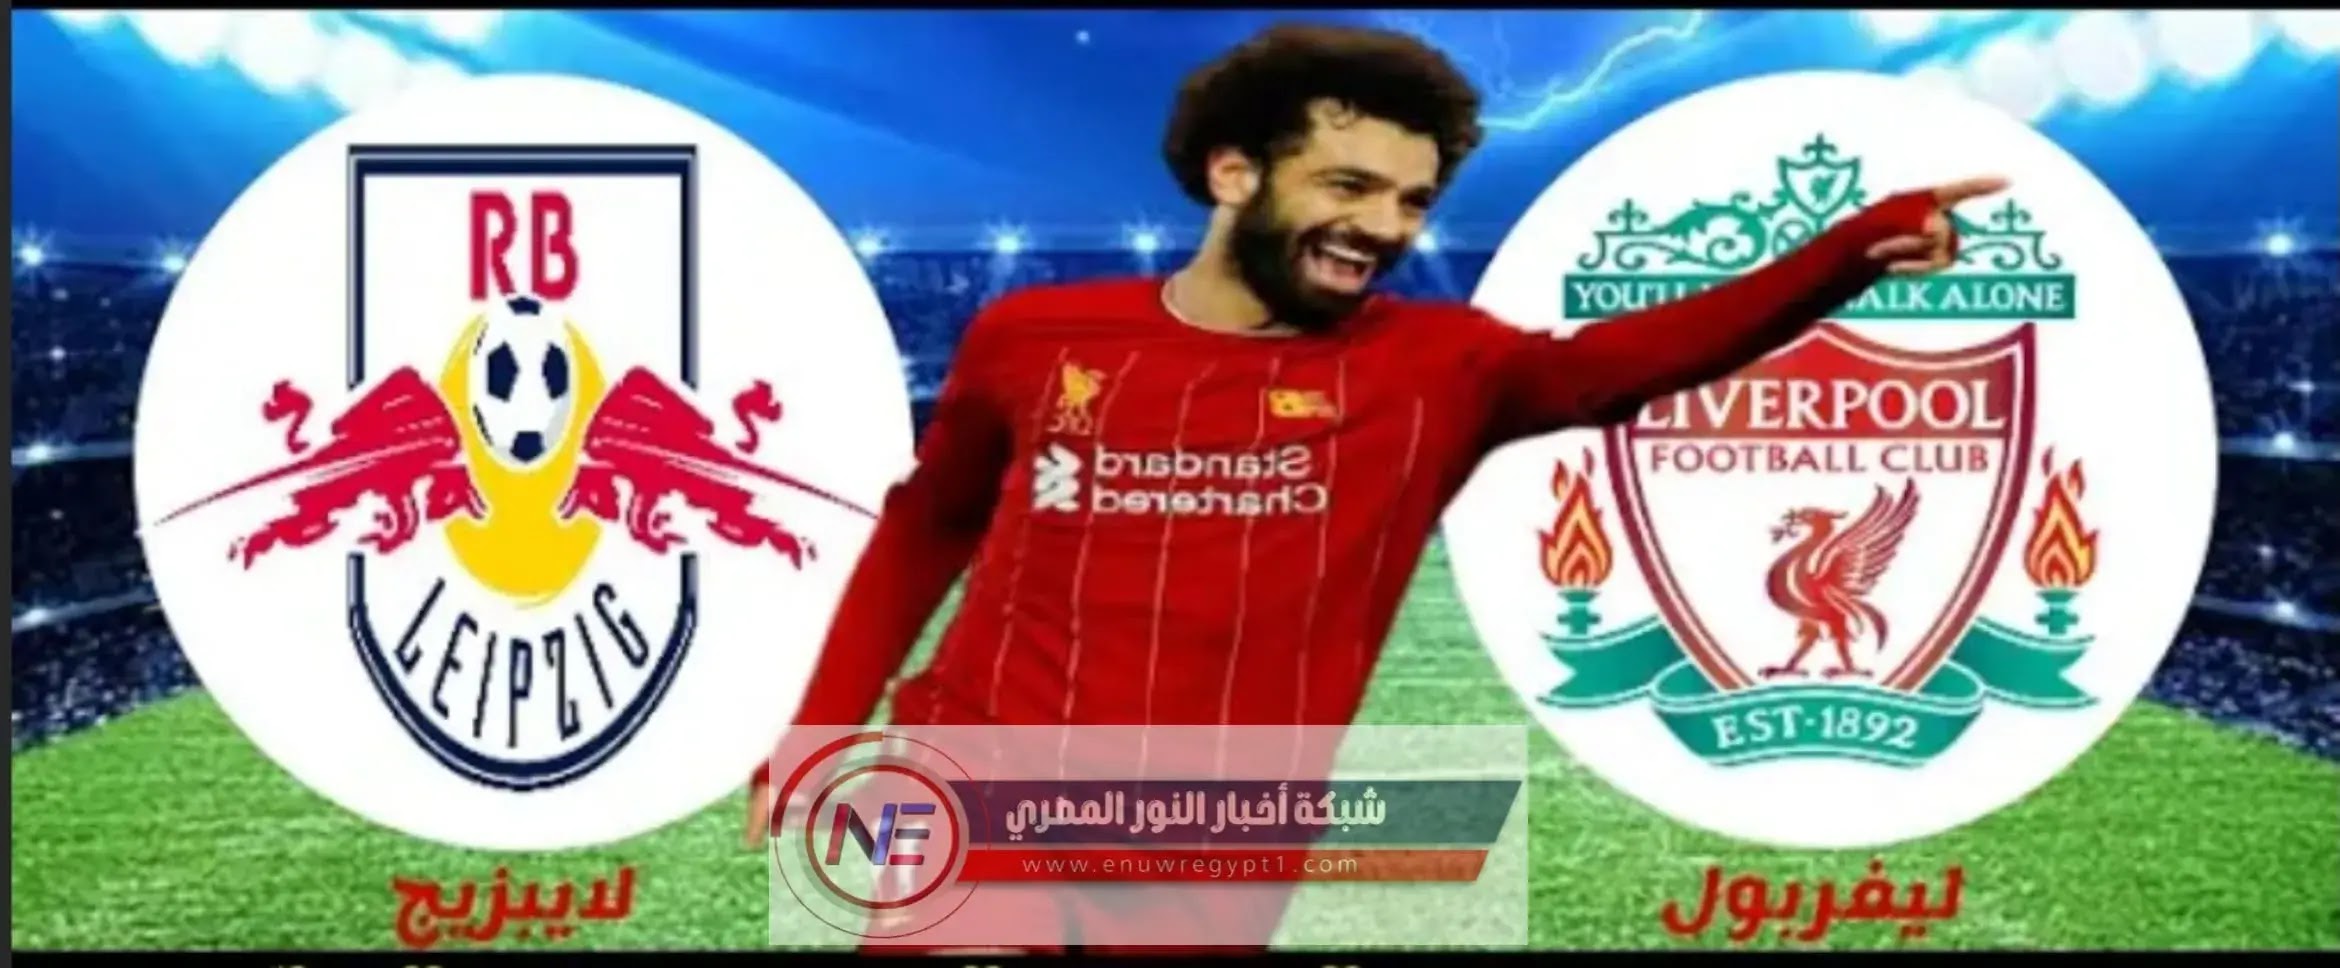 كورة ستار HD | مشاهدة مباراة ليفربول و لايبزيج لايف اليوم 10-03-2021 في دورى أبطال أوروبا بجوده عالية تعليق عربي